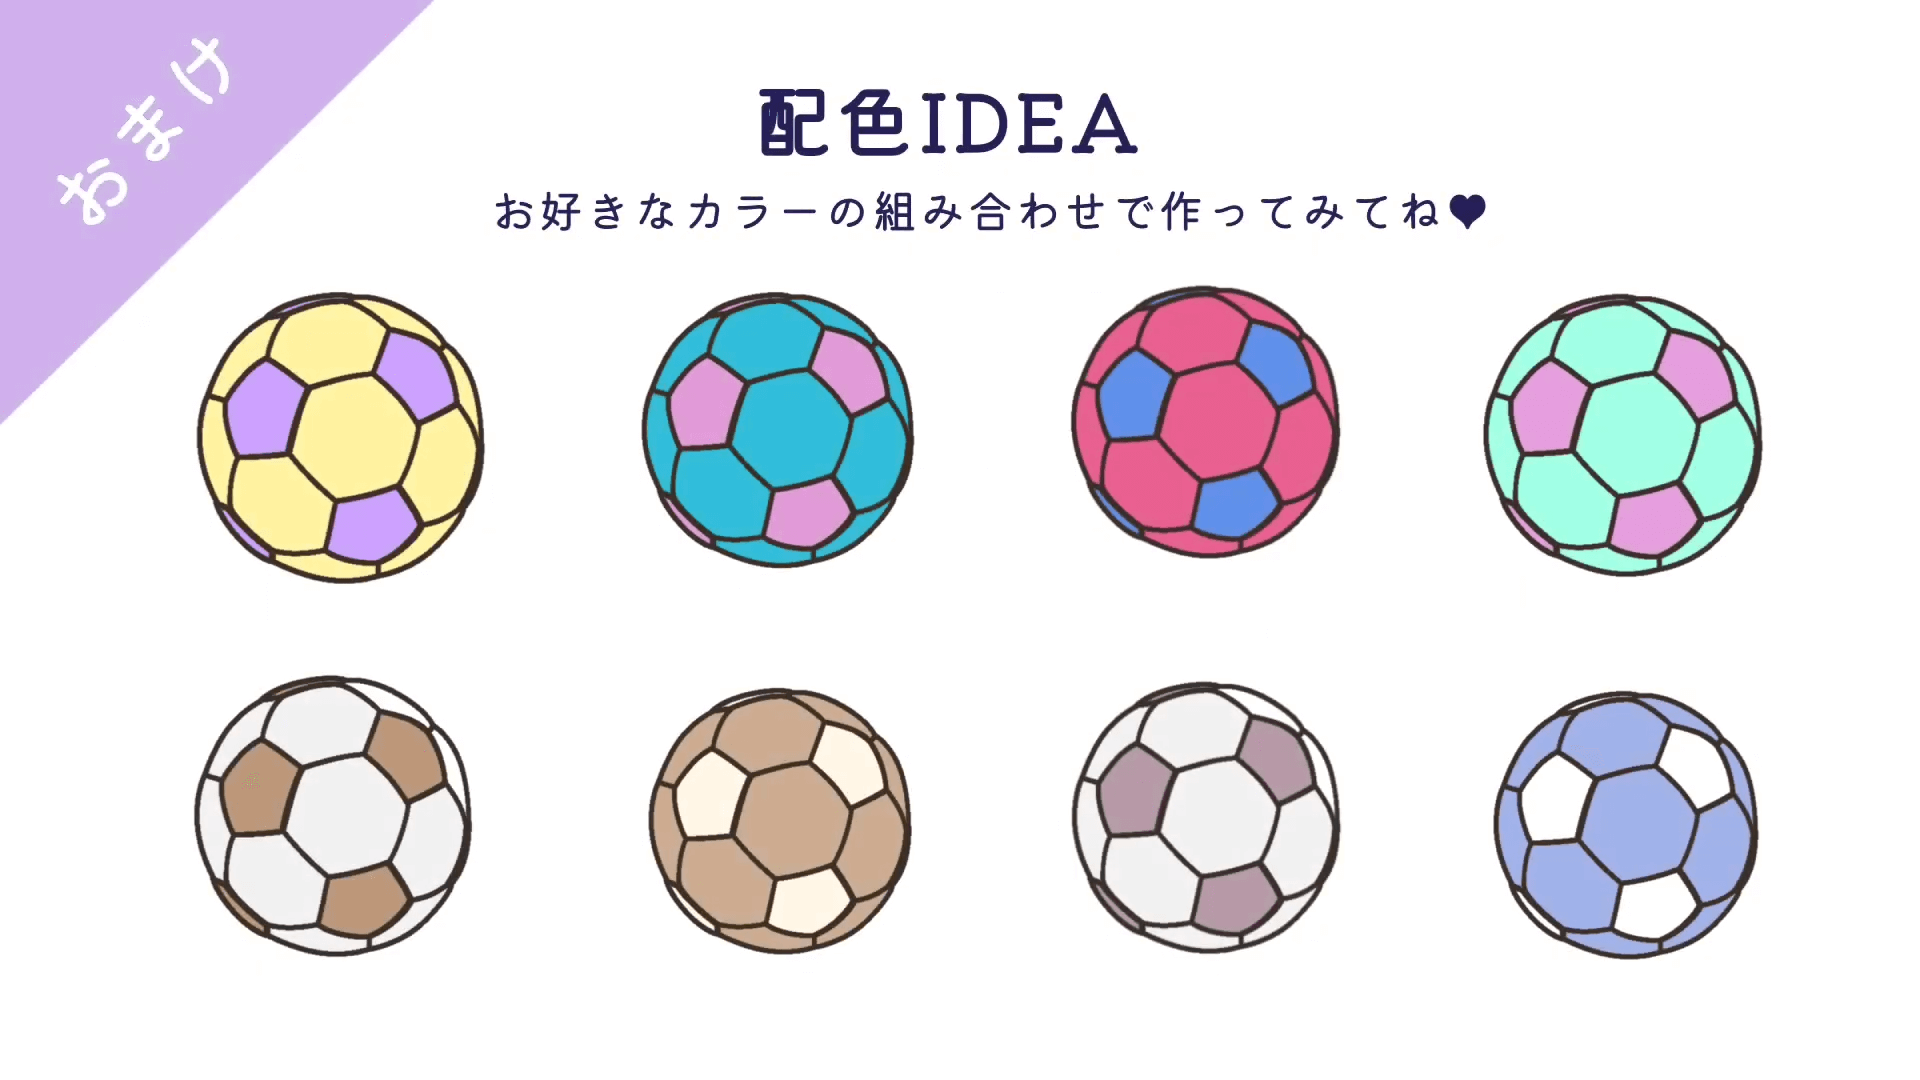 サッカーボールのカラーバリエーションアイディア。